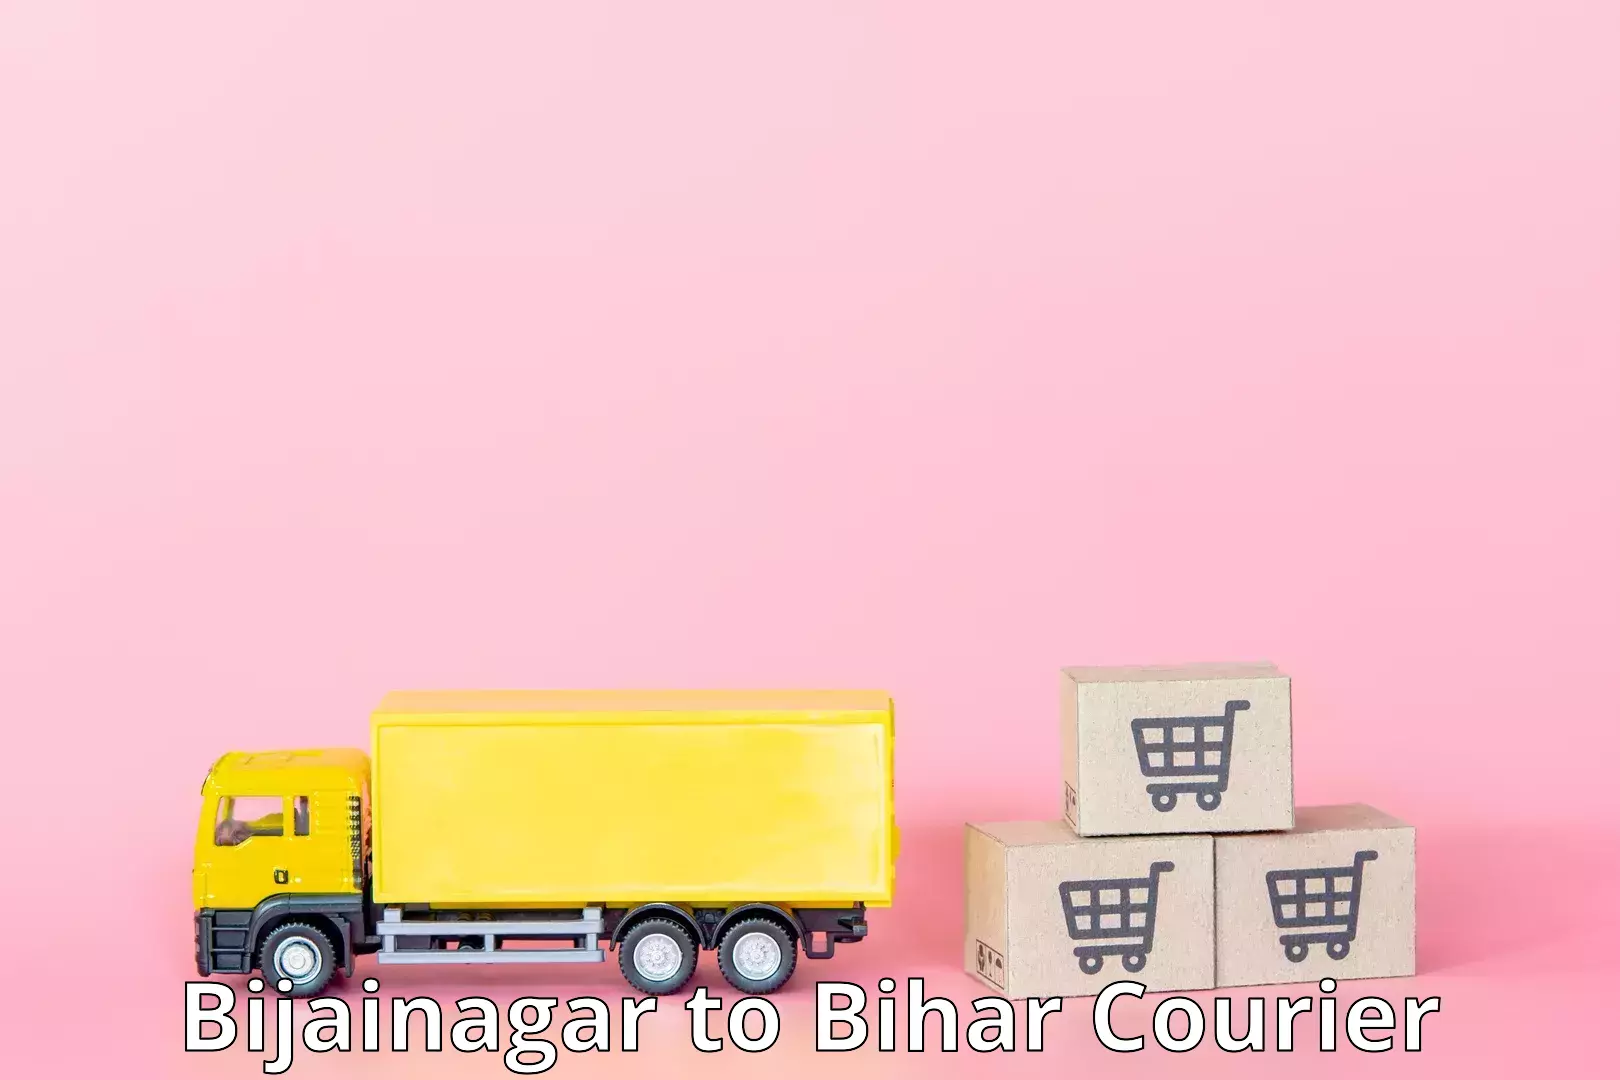 Regular parcel service in Bijainagar to Kanker Nabinagar